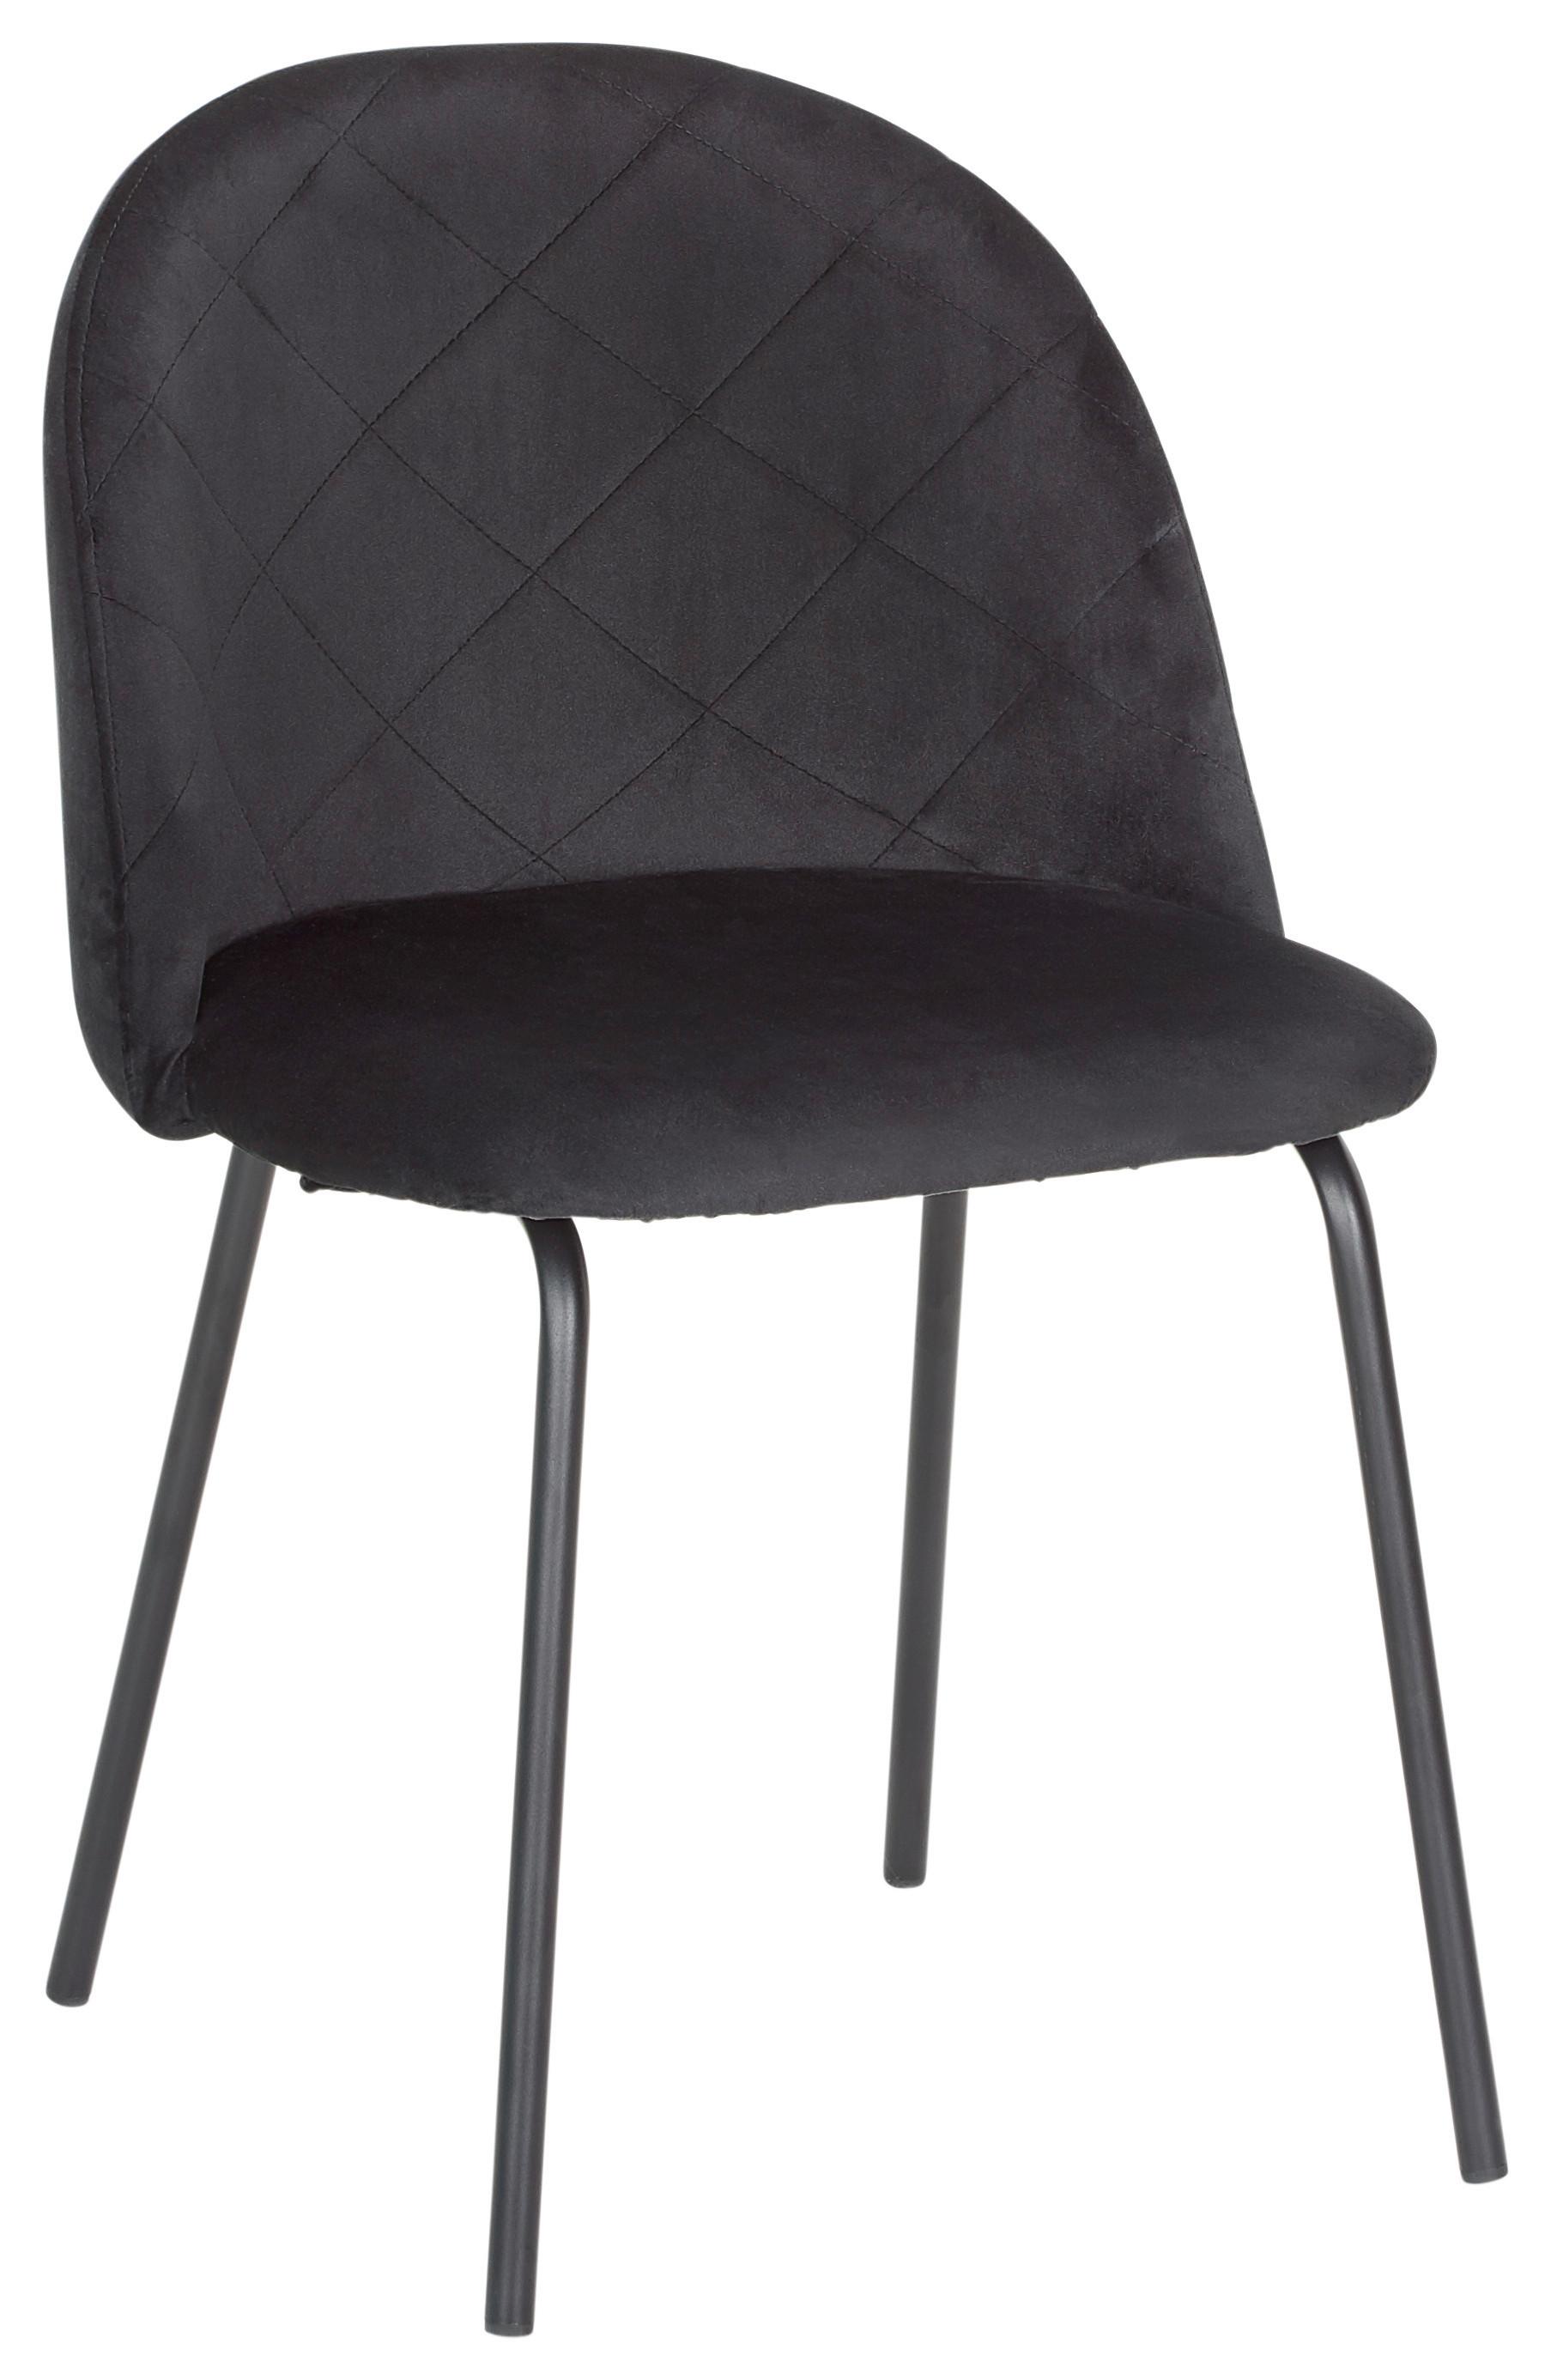 Stuhl "Selina", Samtbezug, schwarz, Gepolstert - Schwarz, MODERN, Textil/Metall (48,5/78/54cm) - Bessagi Home